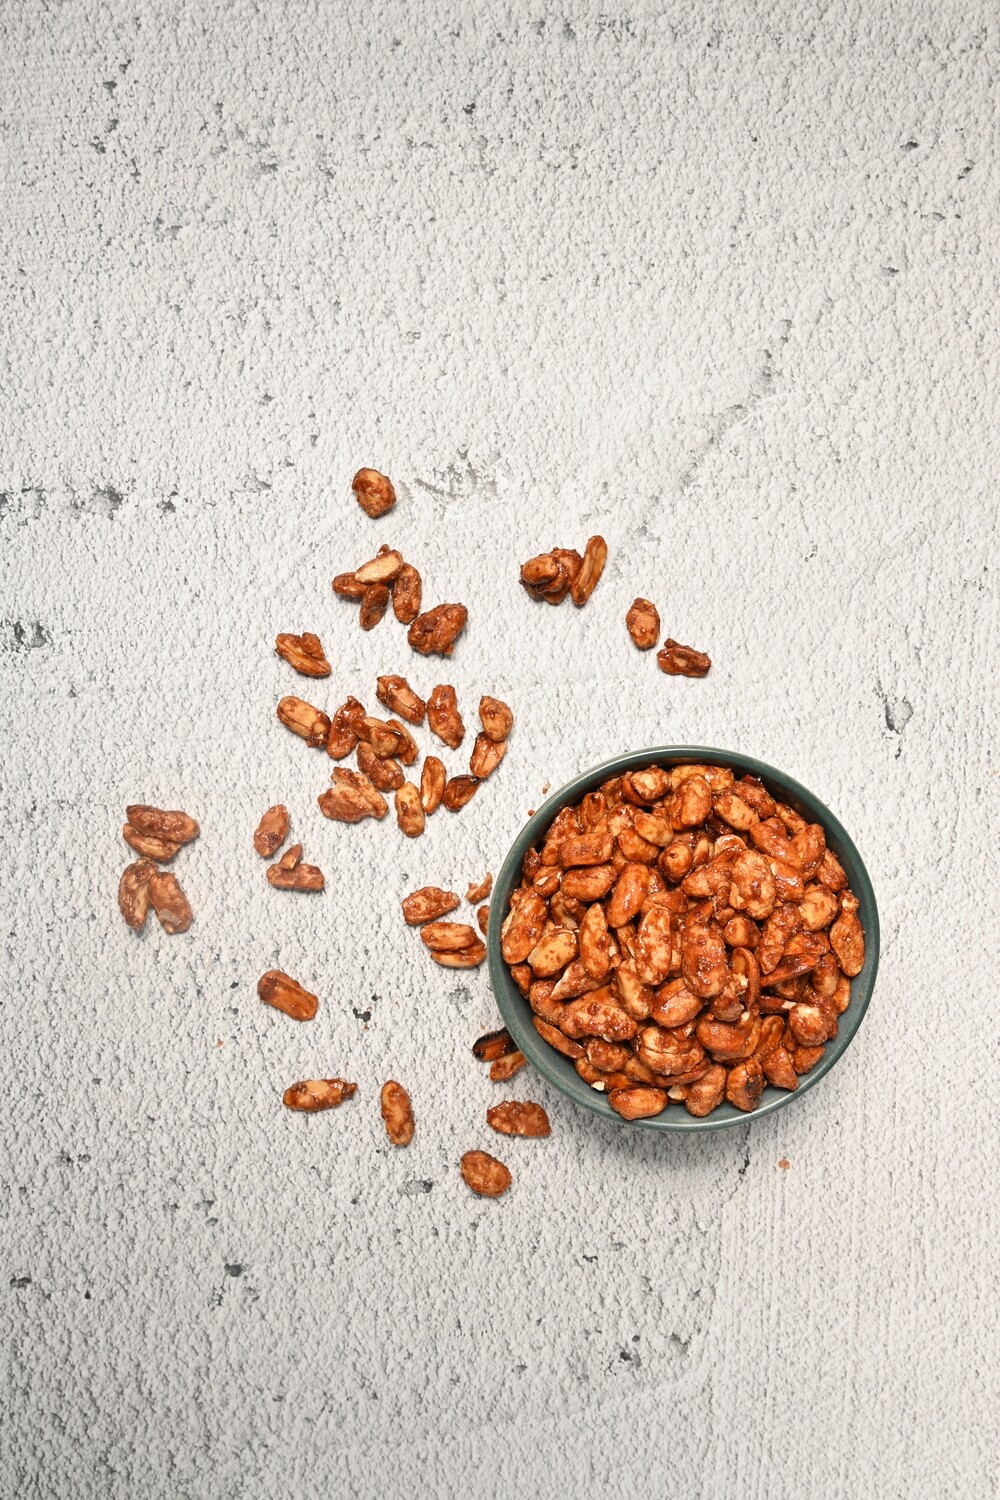 Caramelised Peanuts